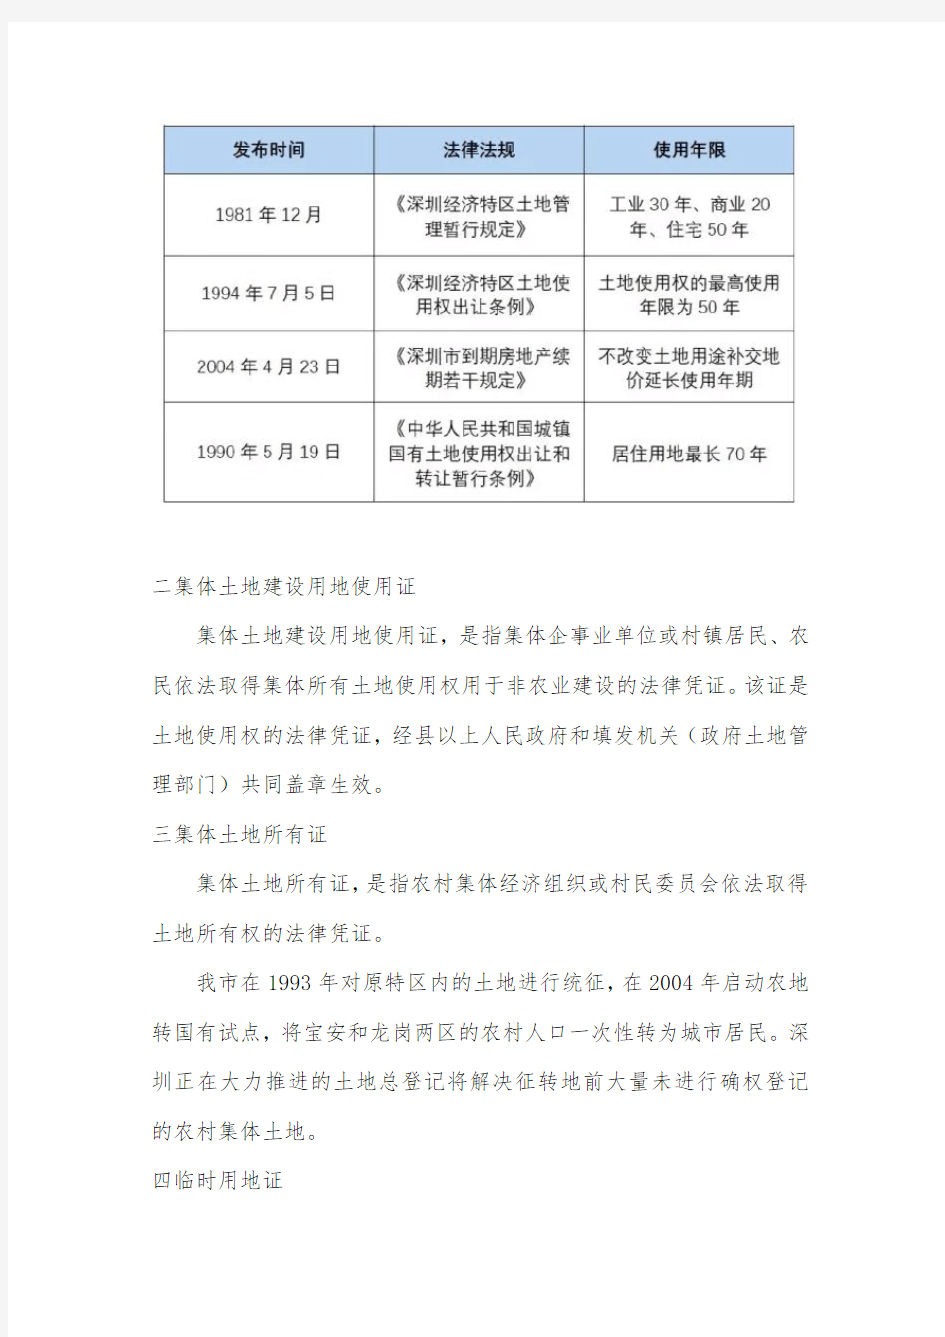 深圳房地产权利证书演变之路